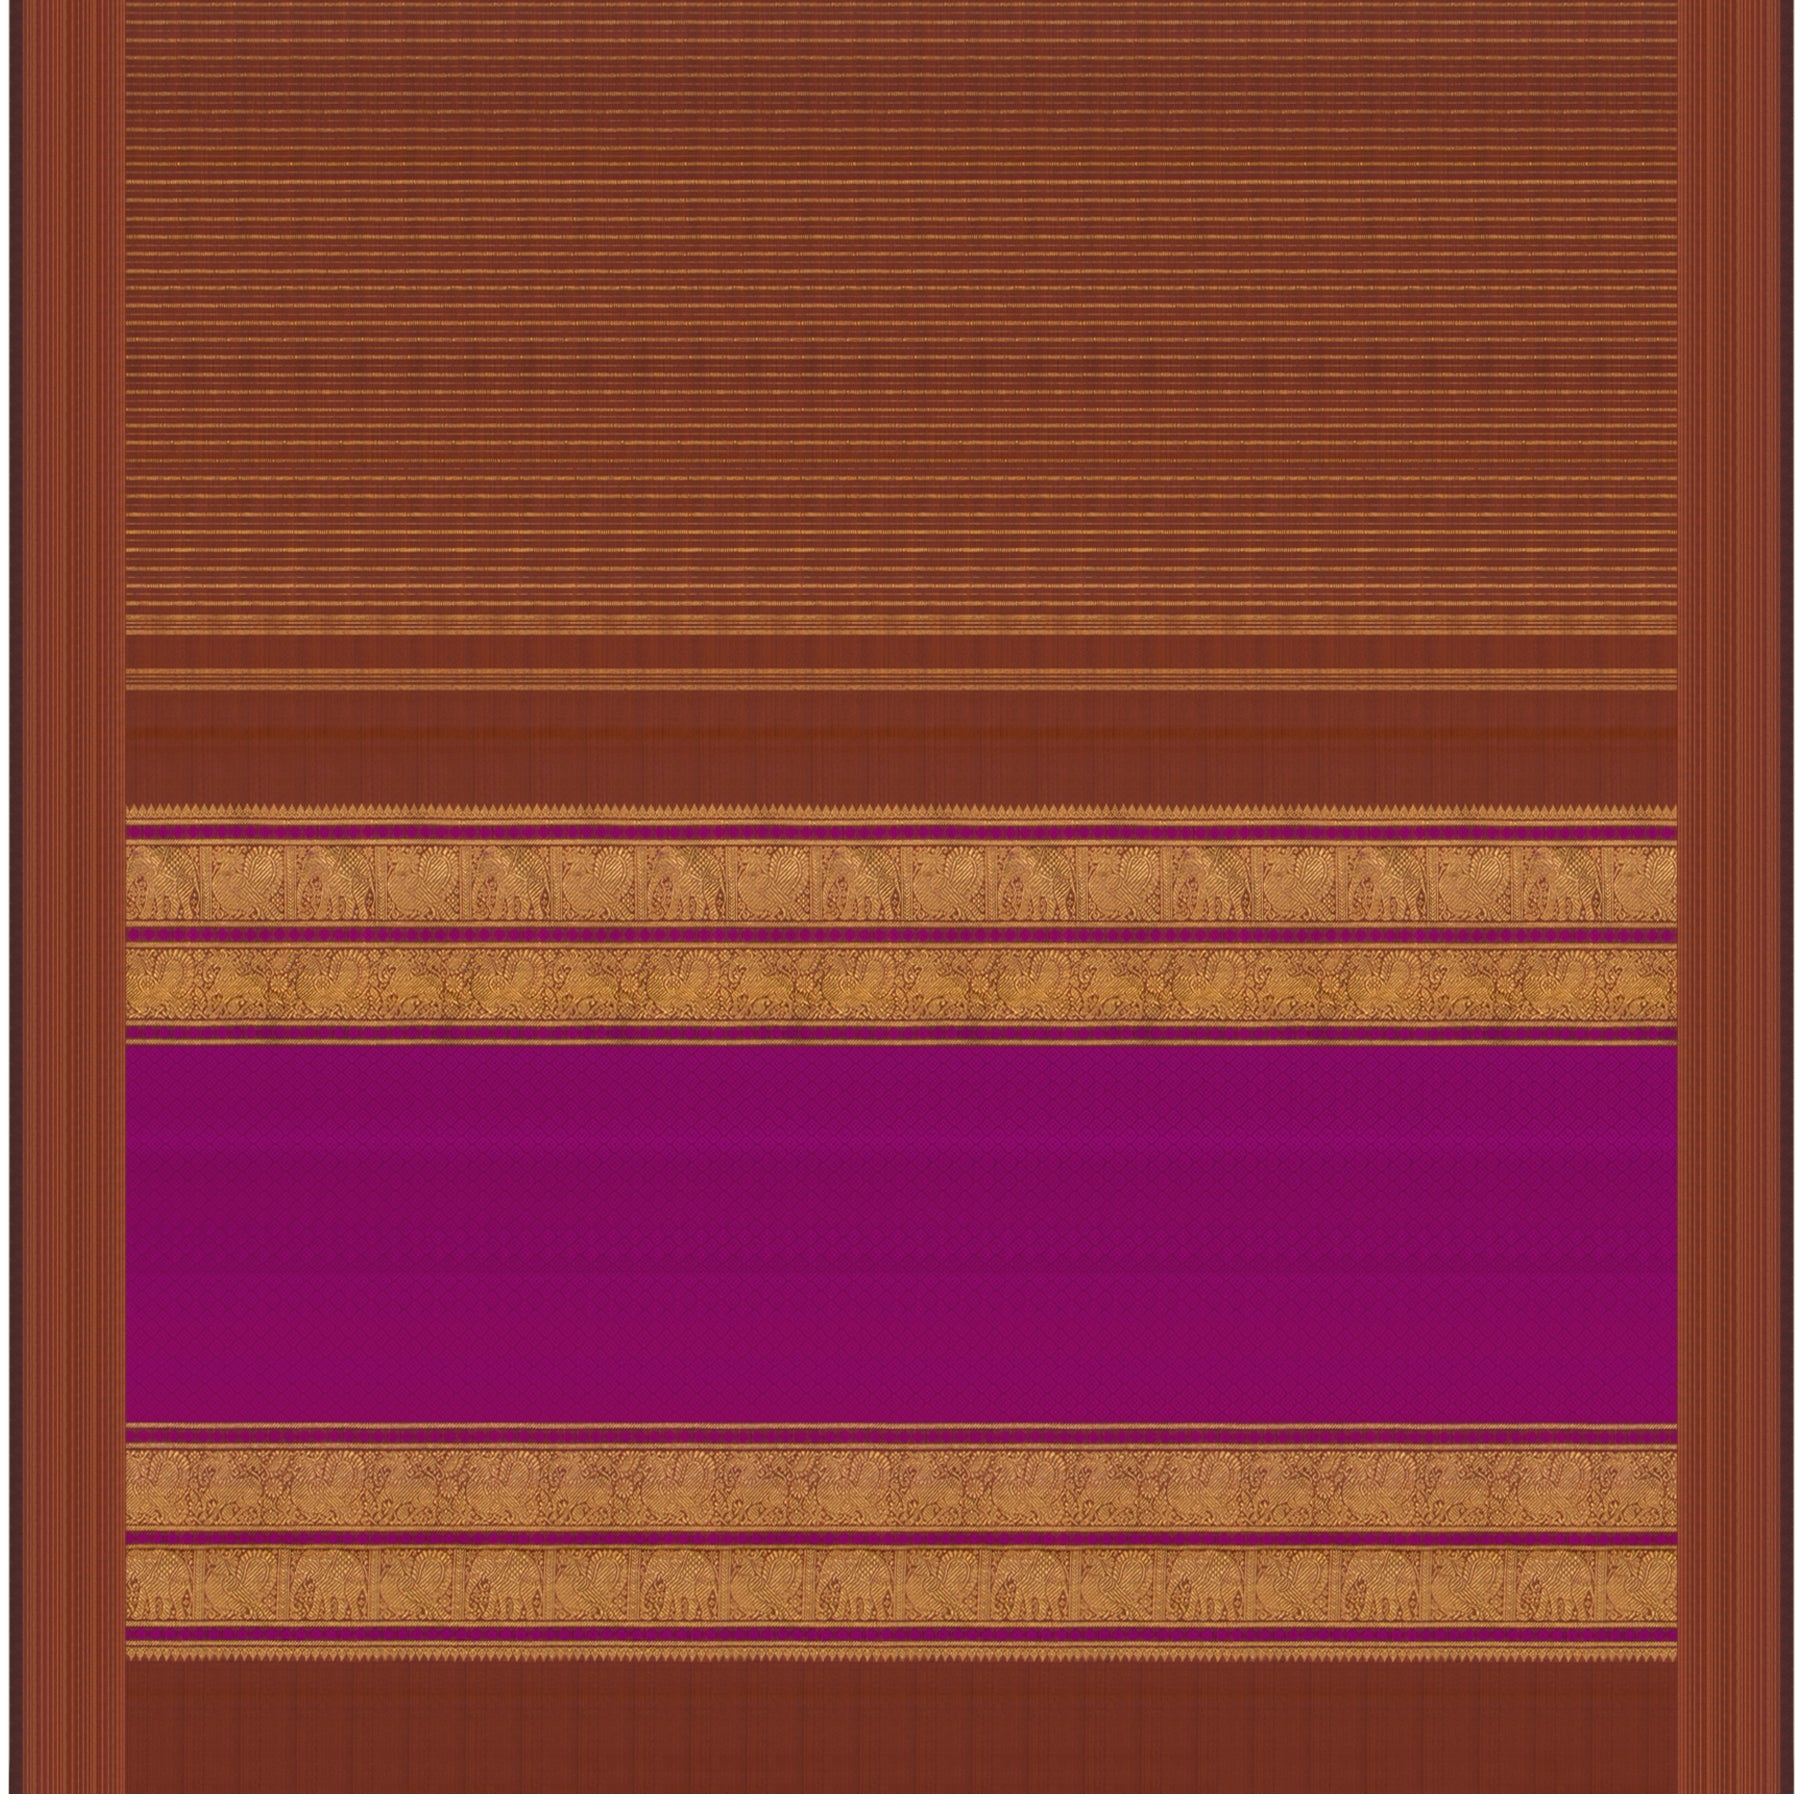 Kanakavalli Kanjivaram Silk Sari 23-599-HS001-01988 - Full View